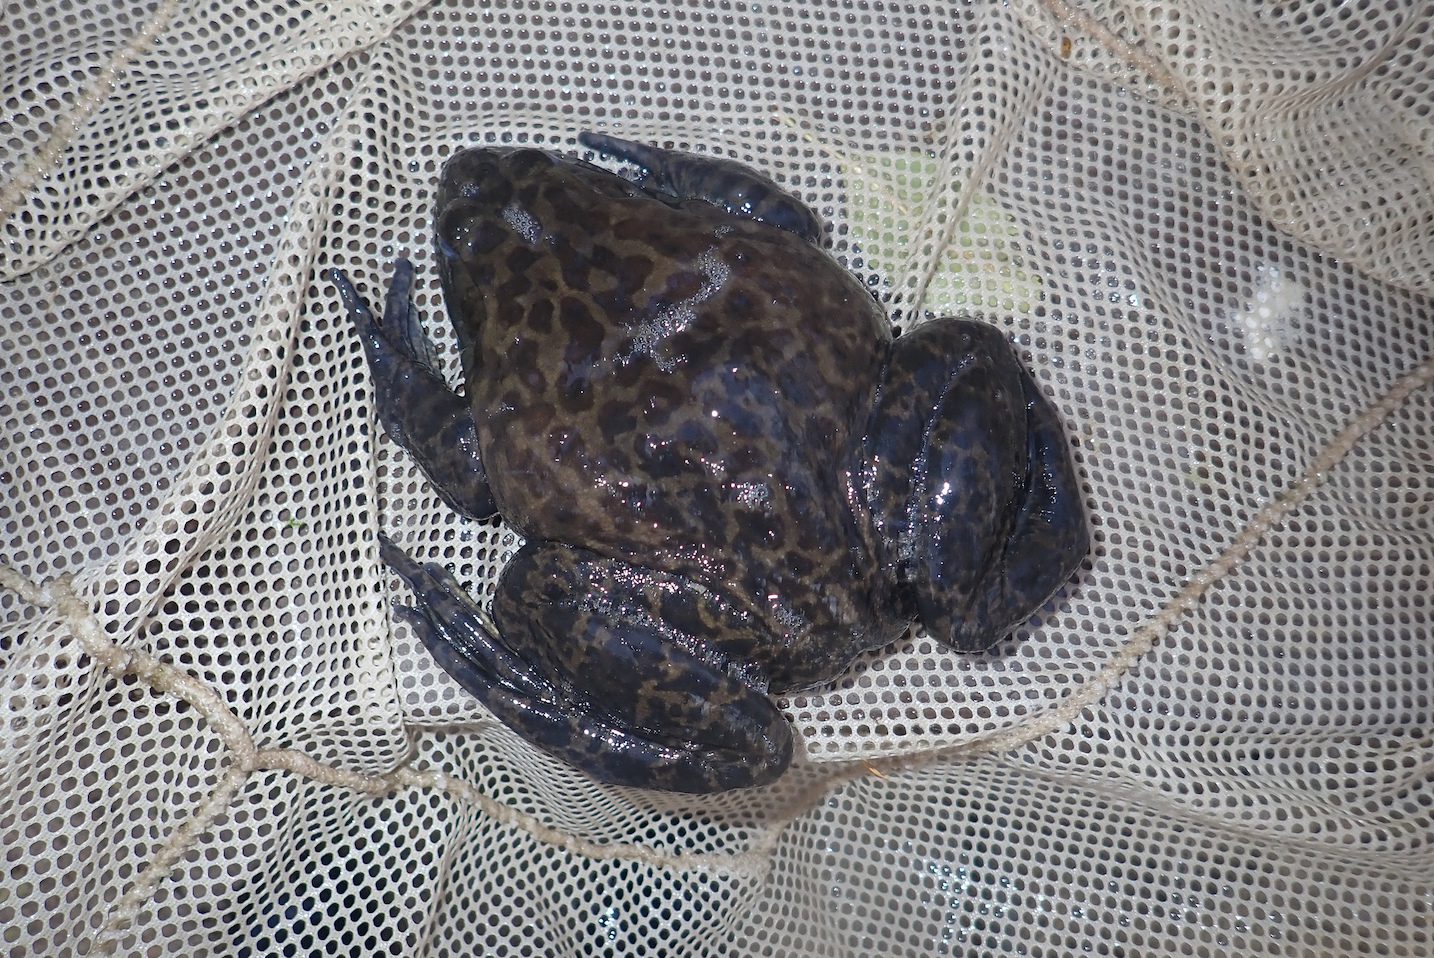 Bullfrog dark morph